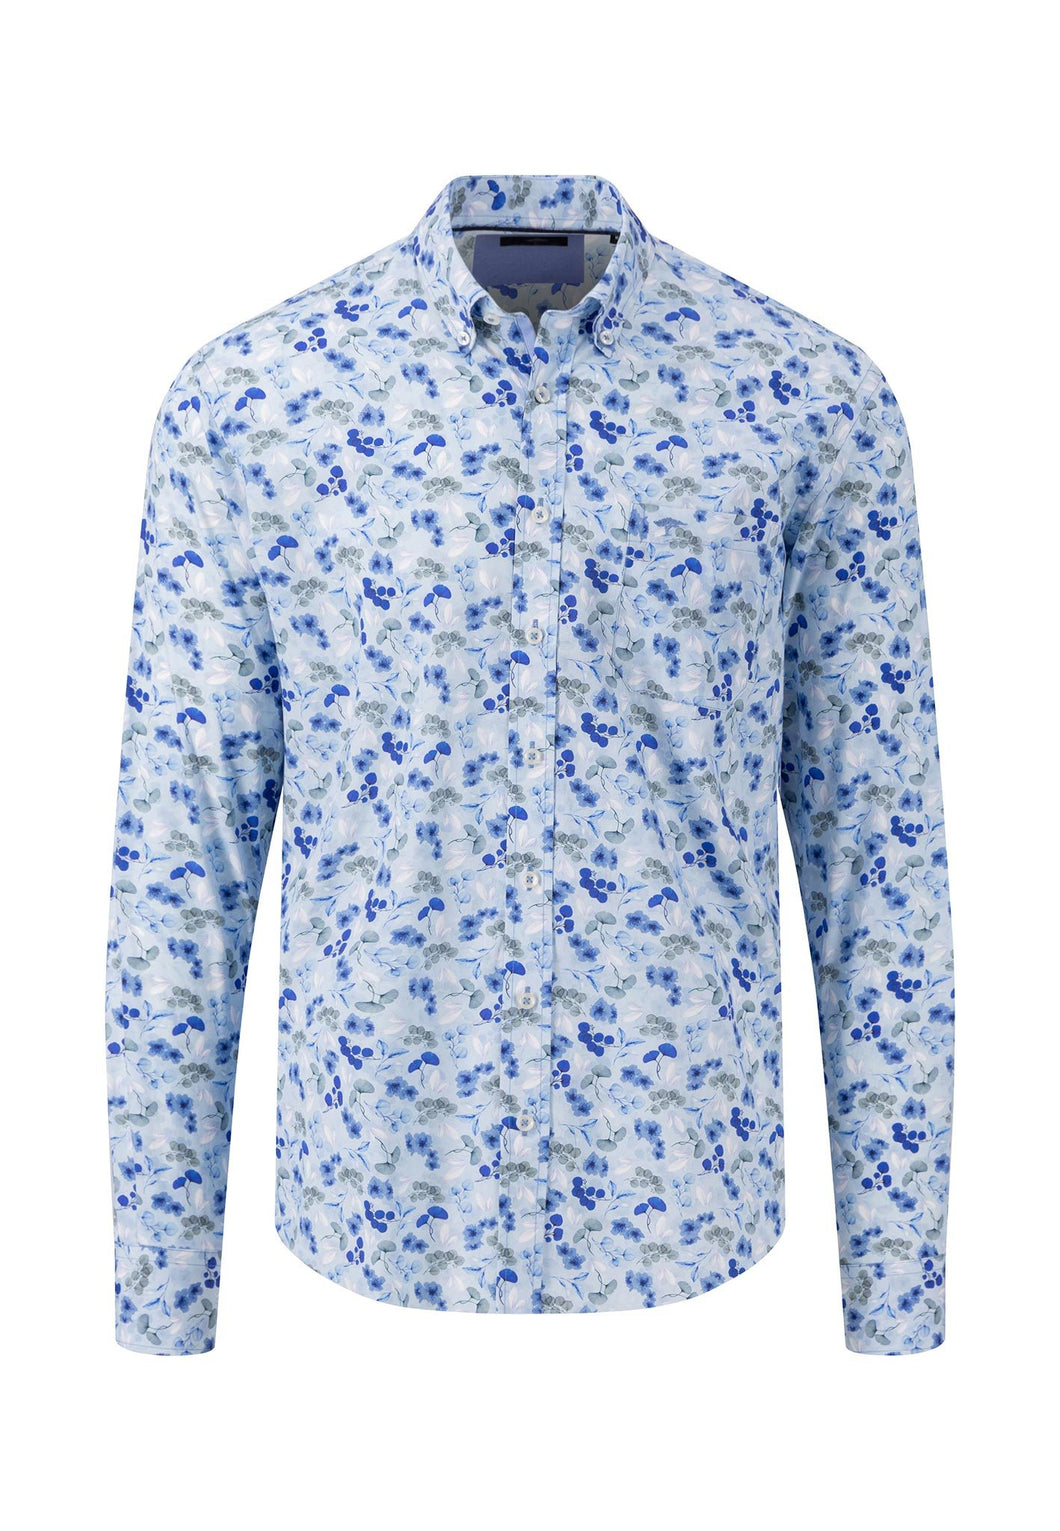 New Fynch Hatton Flower Print Long Sleeve Shirt